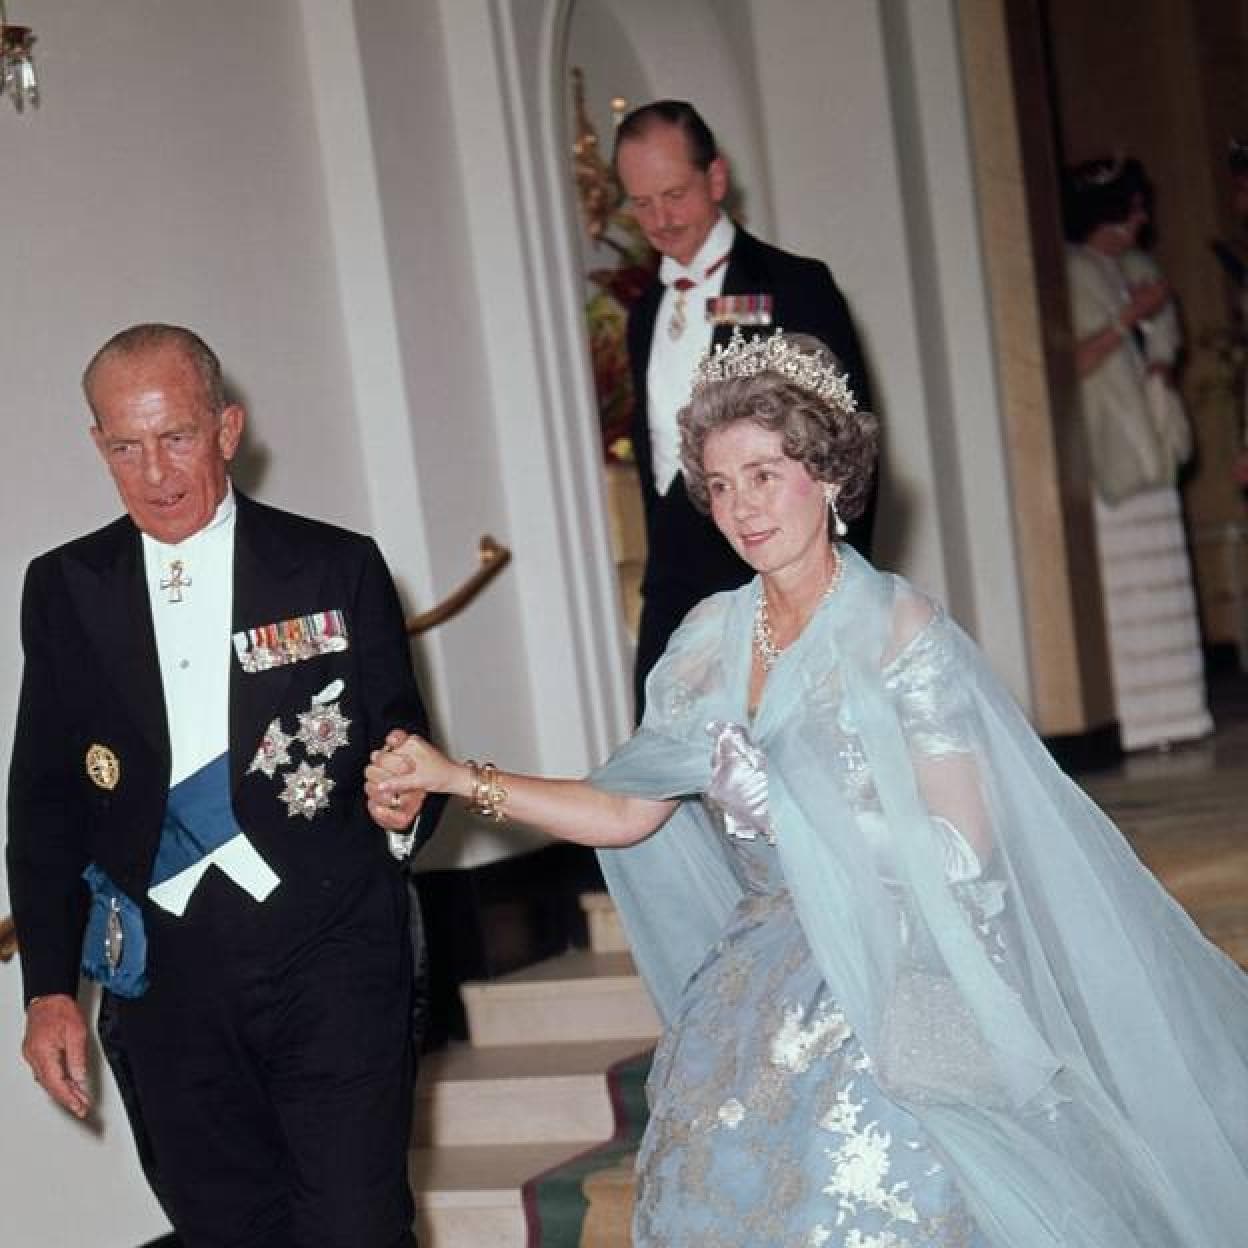 Pincha en la foto para descubrir los momentos más importantes en la vida de la reina Sofía, hija de la reina Federica de Grecia./getty images